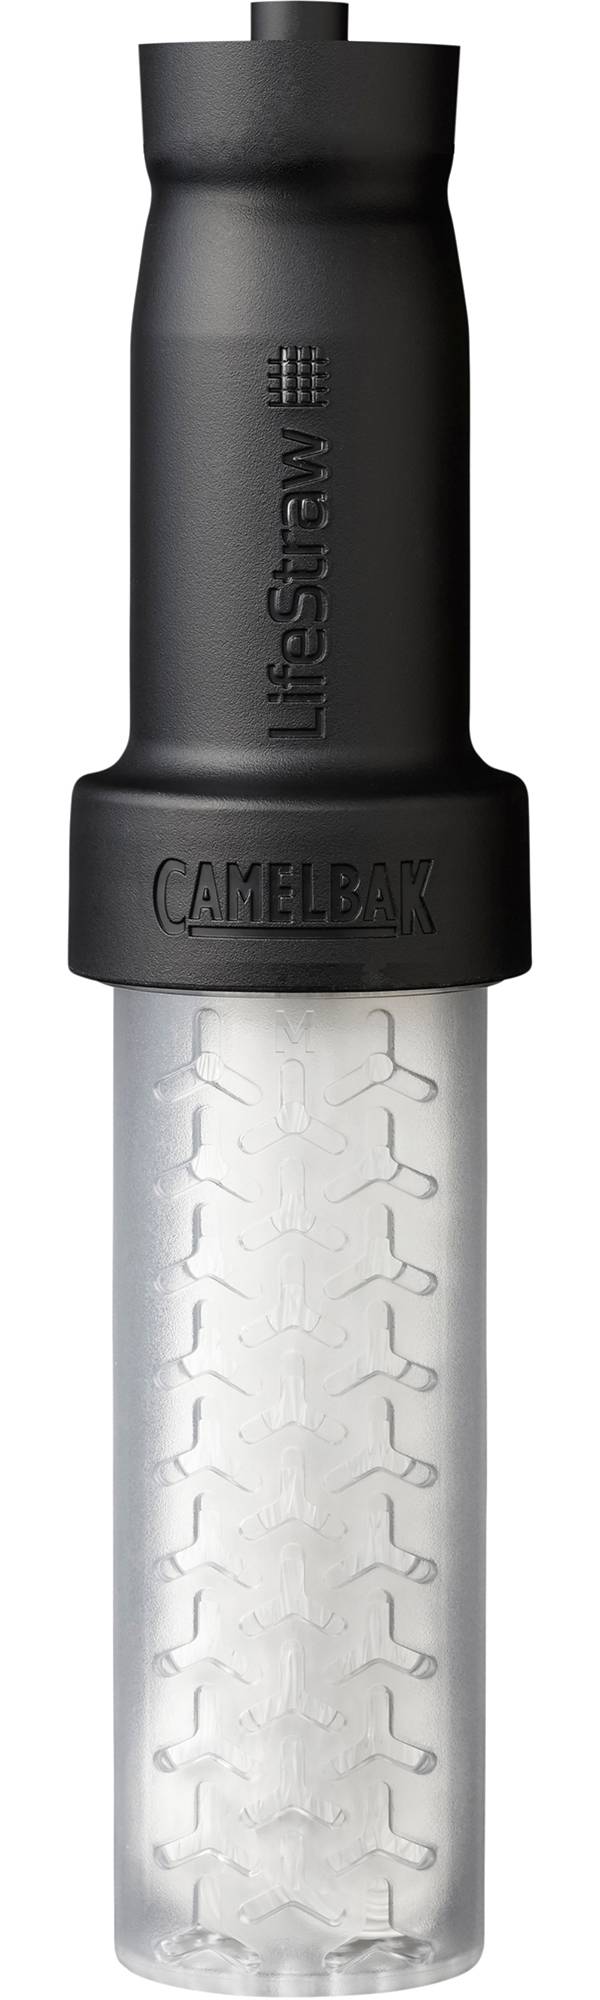 CamelBak LifeStraw Bottle Filter Set Medium product image